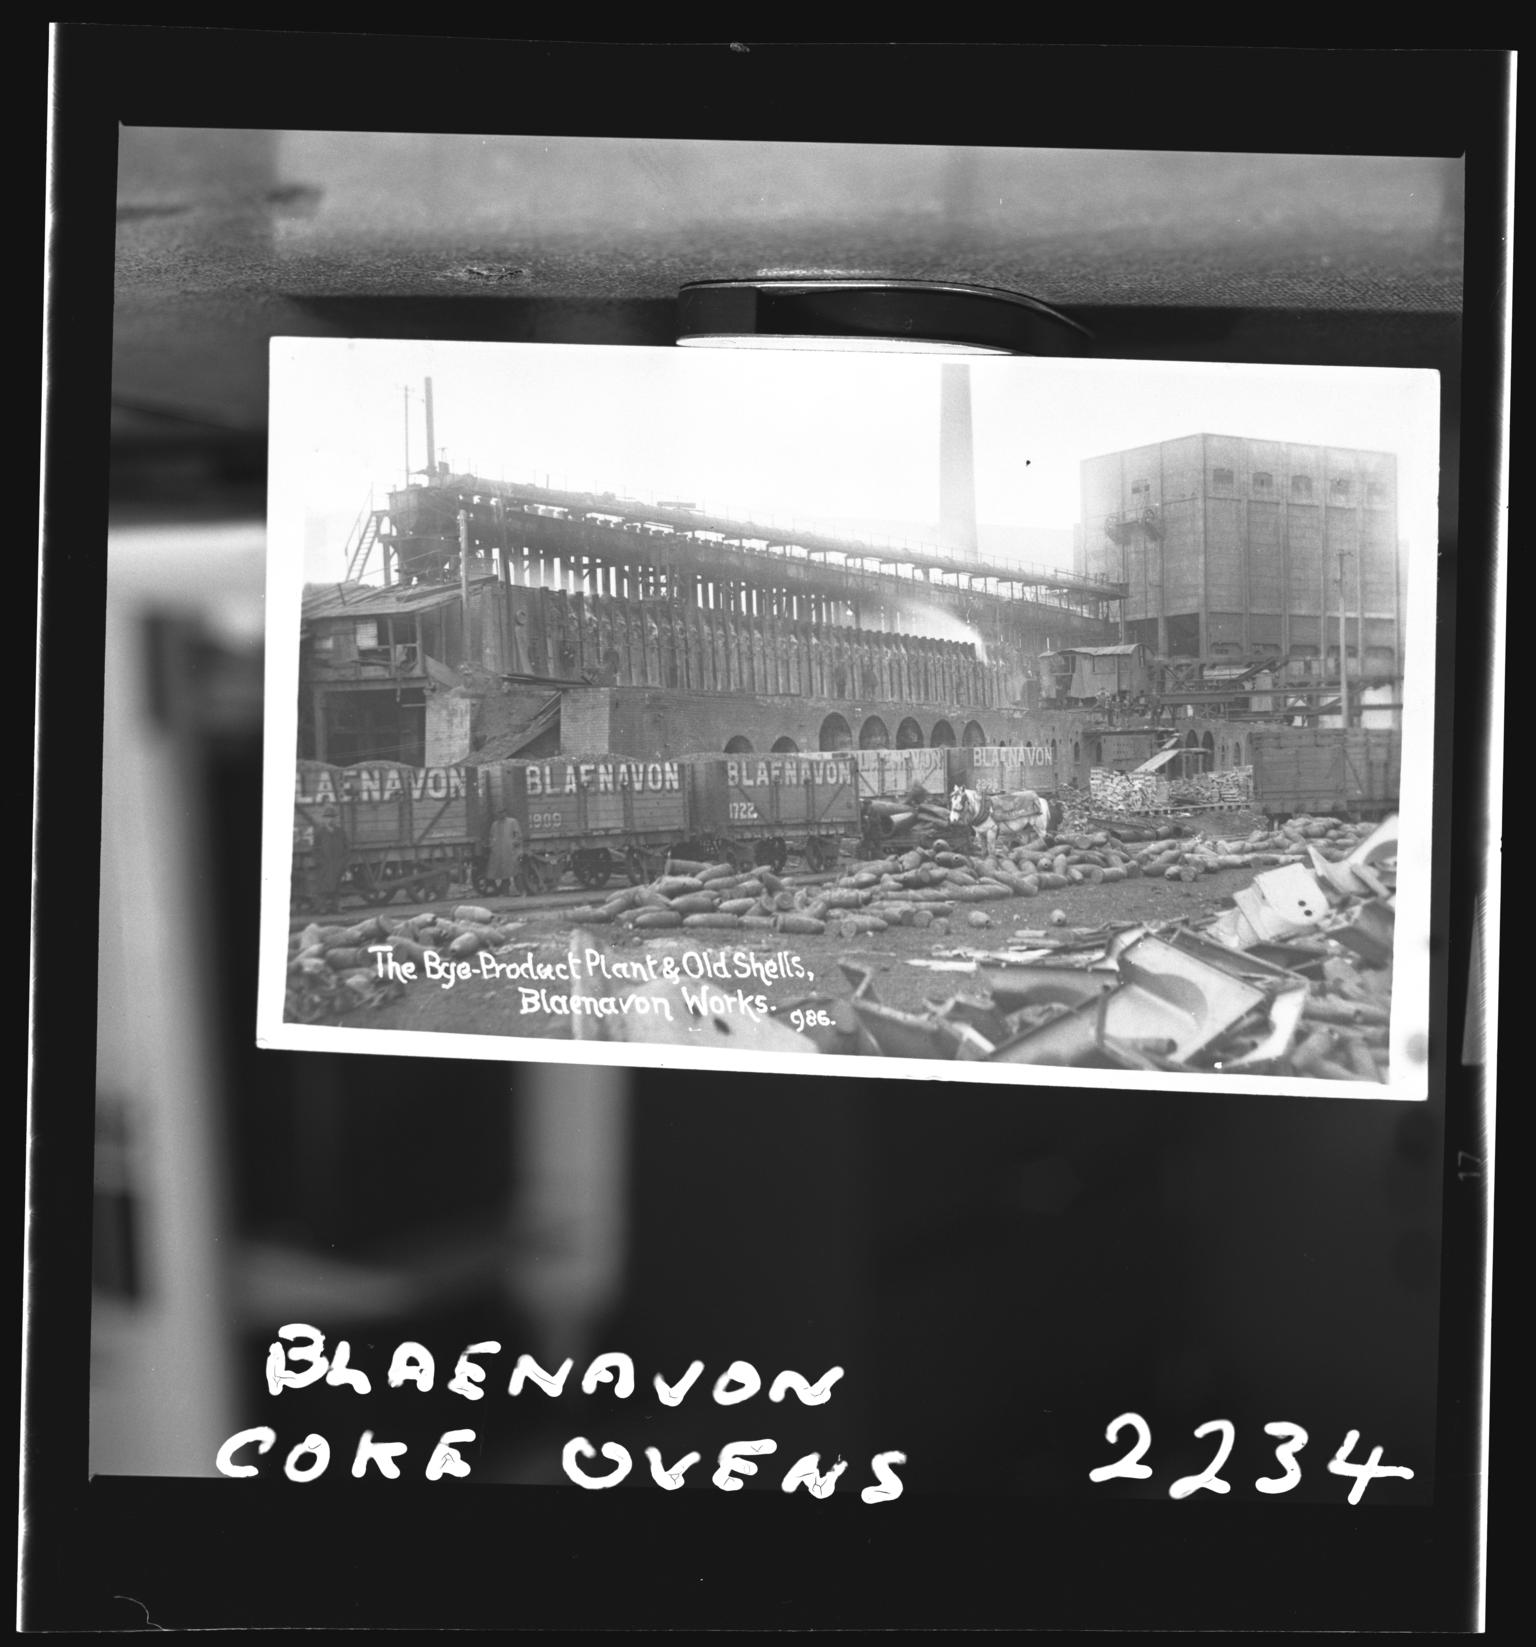 Blaenavon coke ovens, film negative